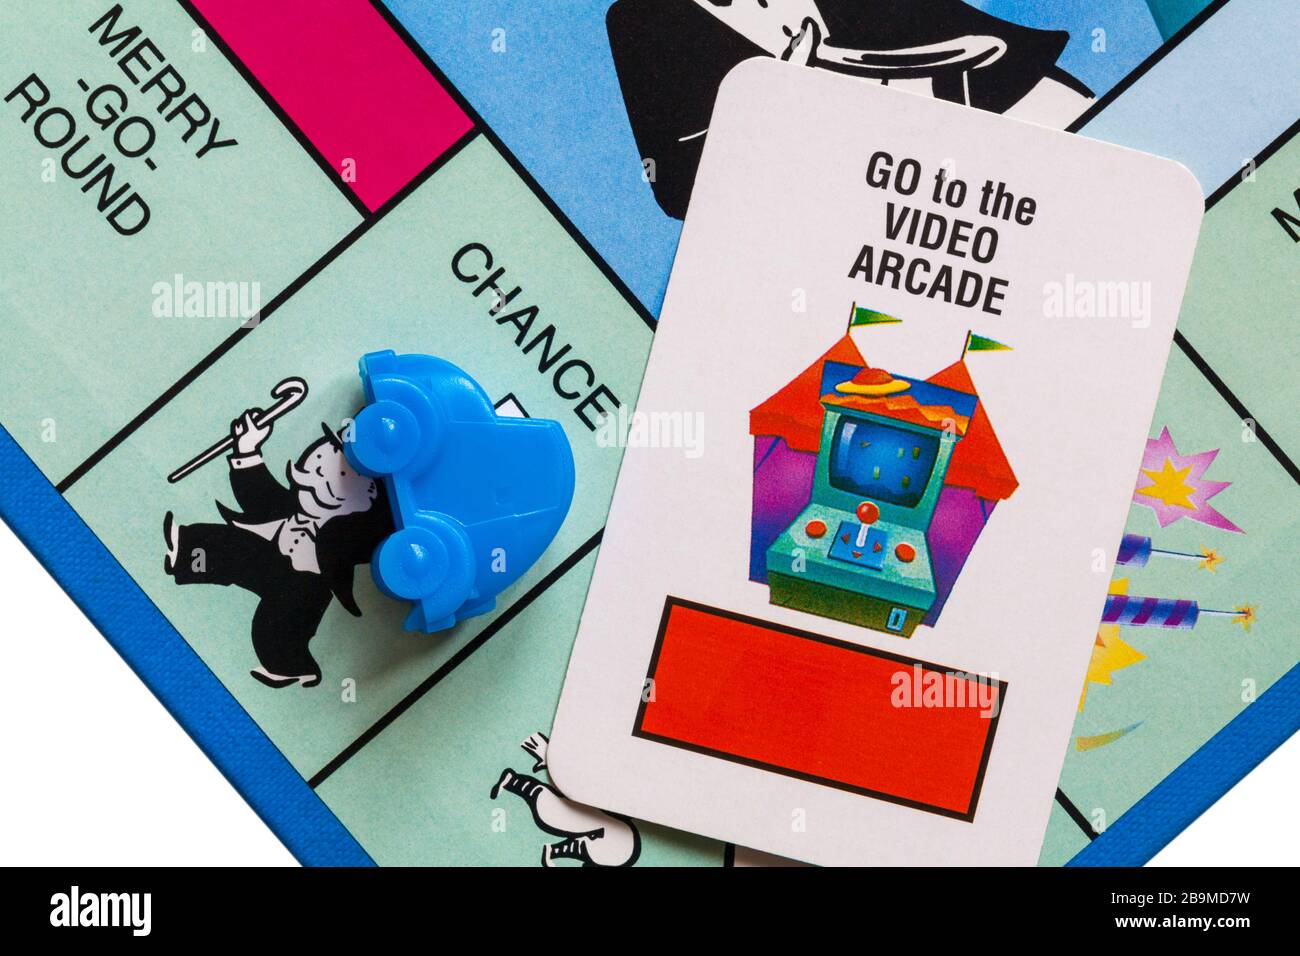 Jeu De Societe Junior Monopoly Detail Du Jeton De Voiture Bleu Sur La Place Chance Avec Aller A La Carte De Chance D Arcade Photo Stock Alamy